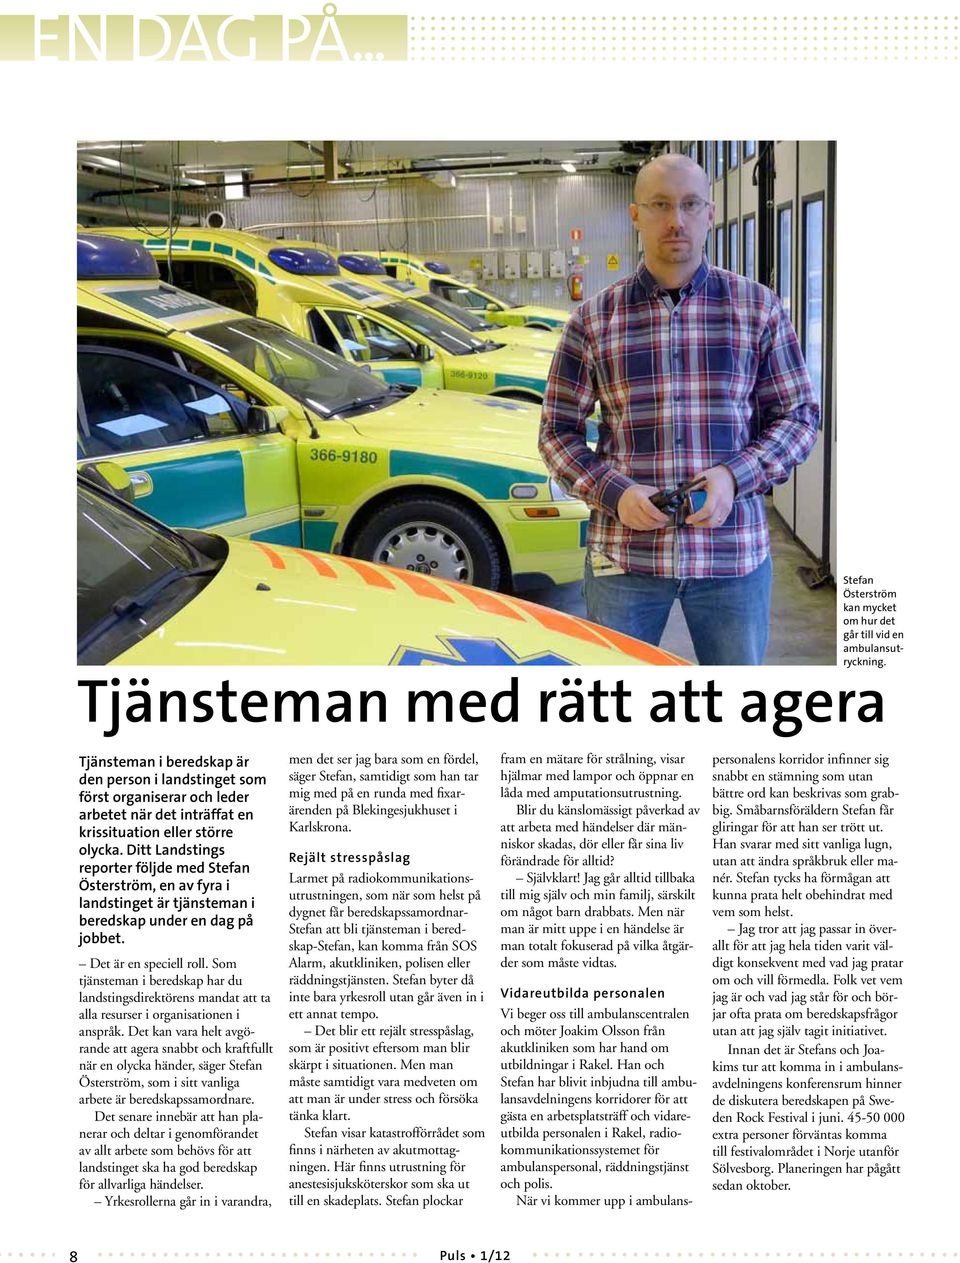 Ditt Landstings reporter följde med Stefan Österström, en av fyra i landstinget är tjänsteman i beredskap under en dag på jobbet. Det är en speciell roll.